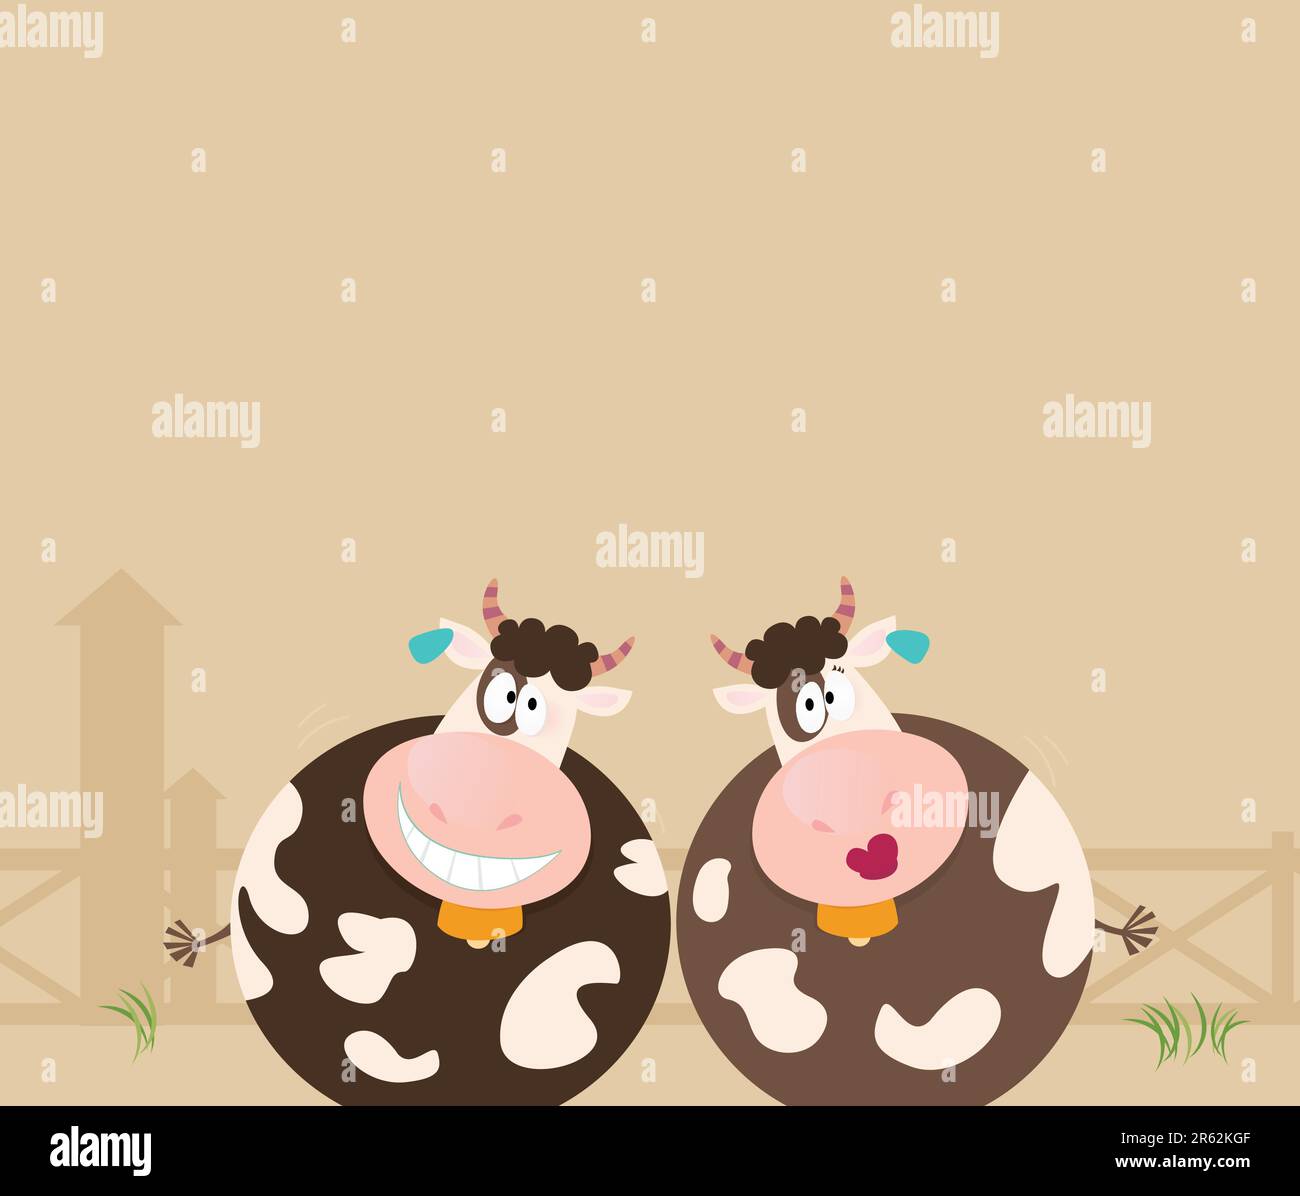 Zwei glückliche Tiere auf dem Hof. Illustration von fröhlichen Kuhfiguren. Stock Vektor